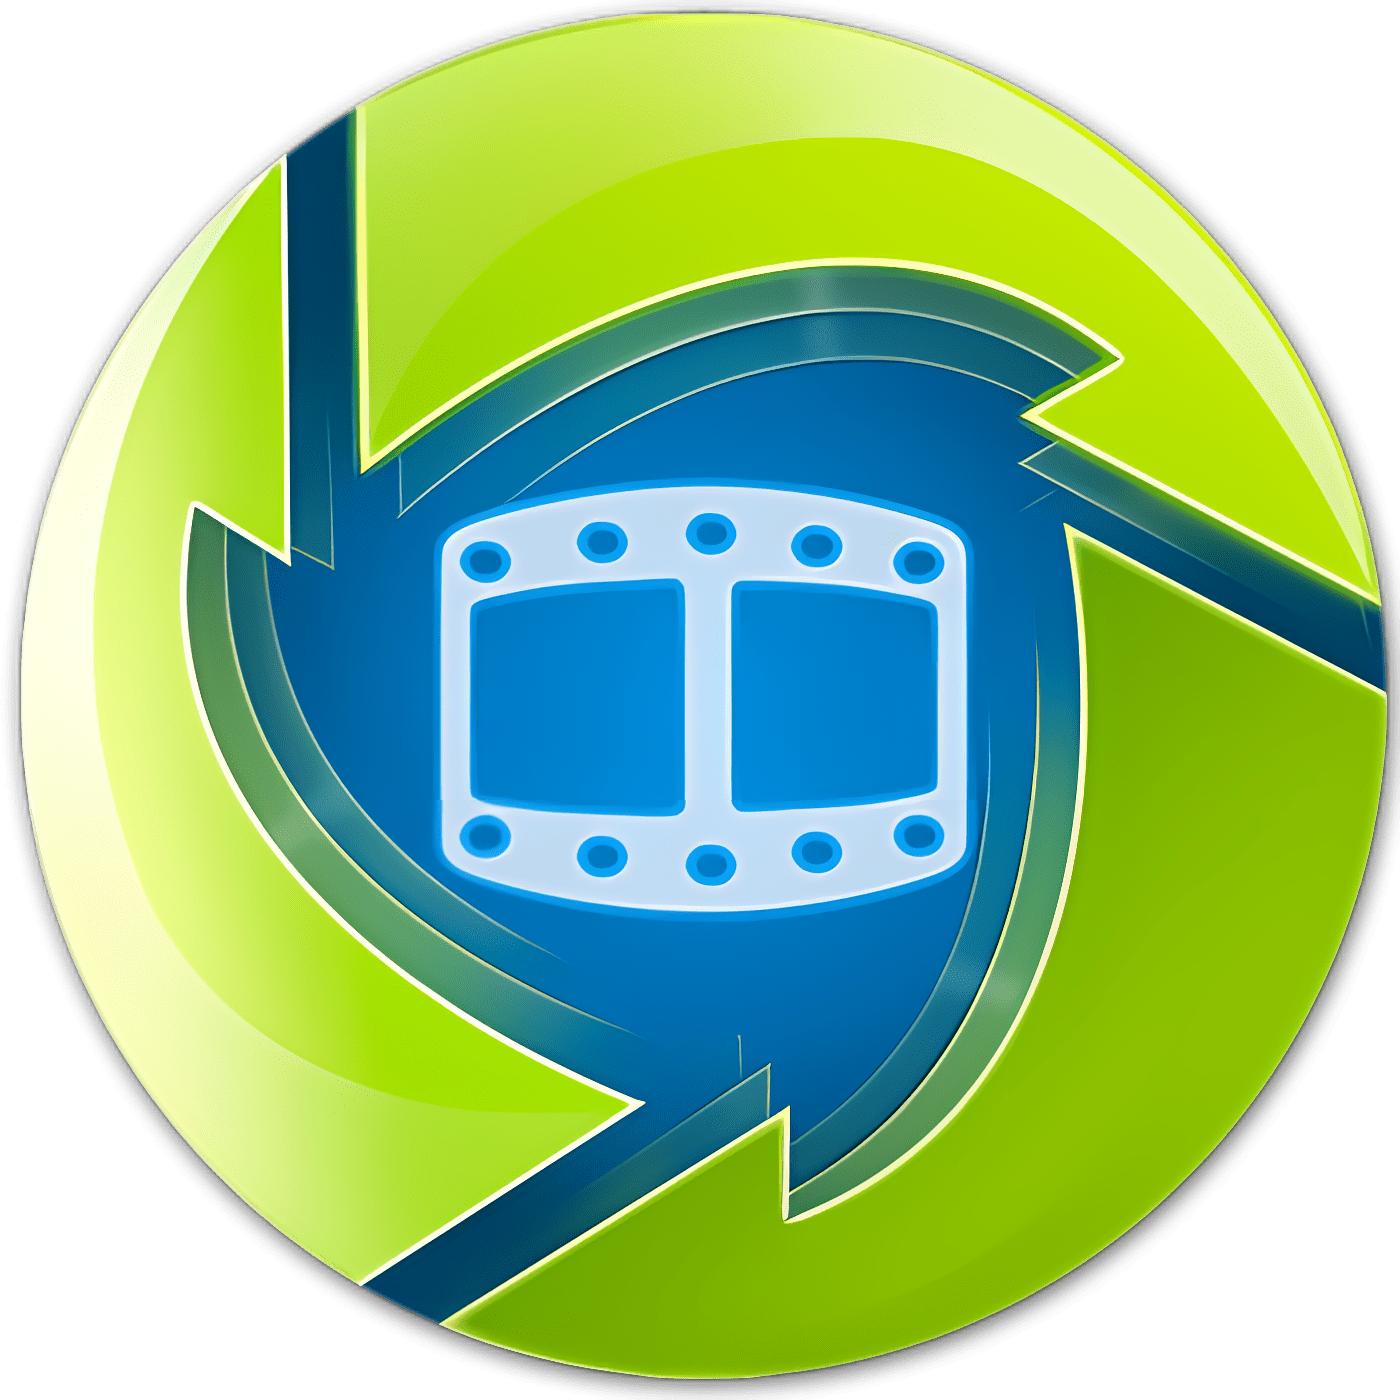 wontube free video converter download